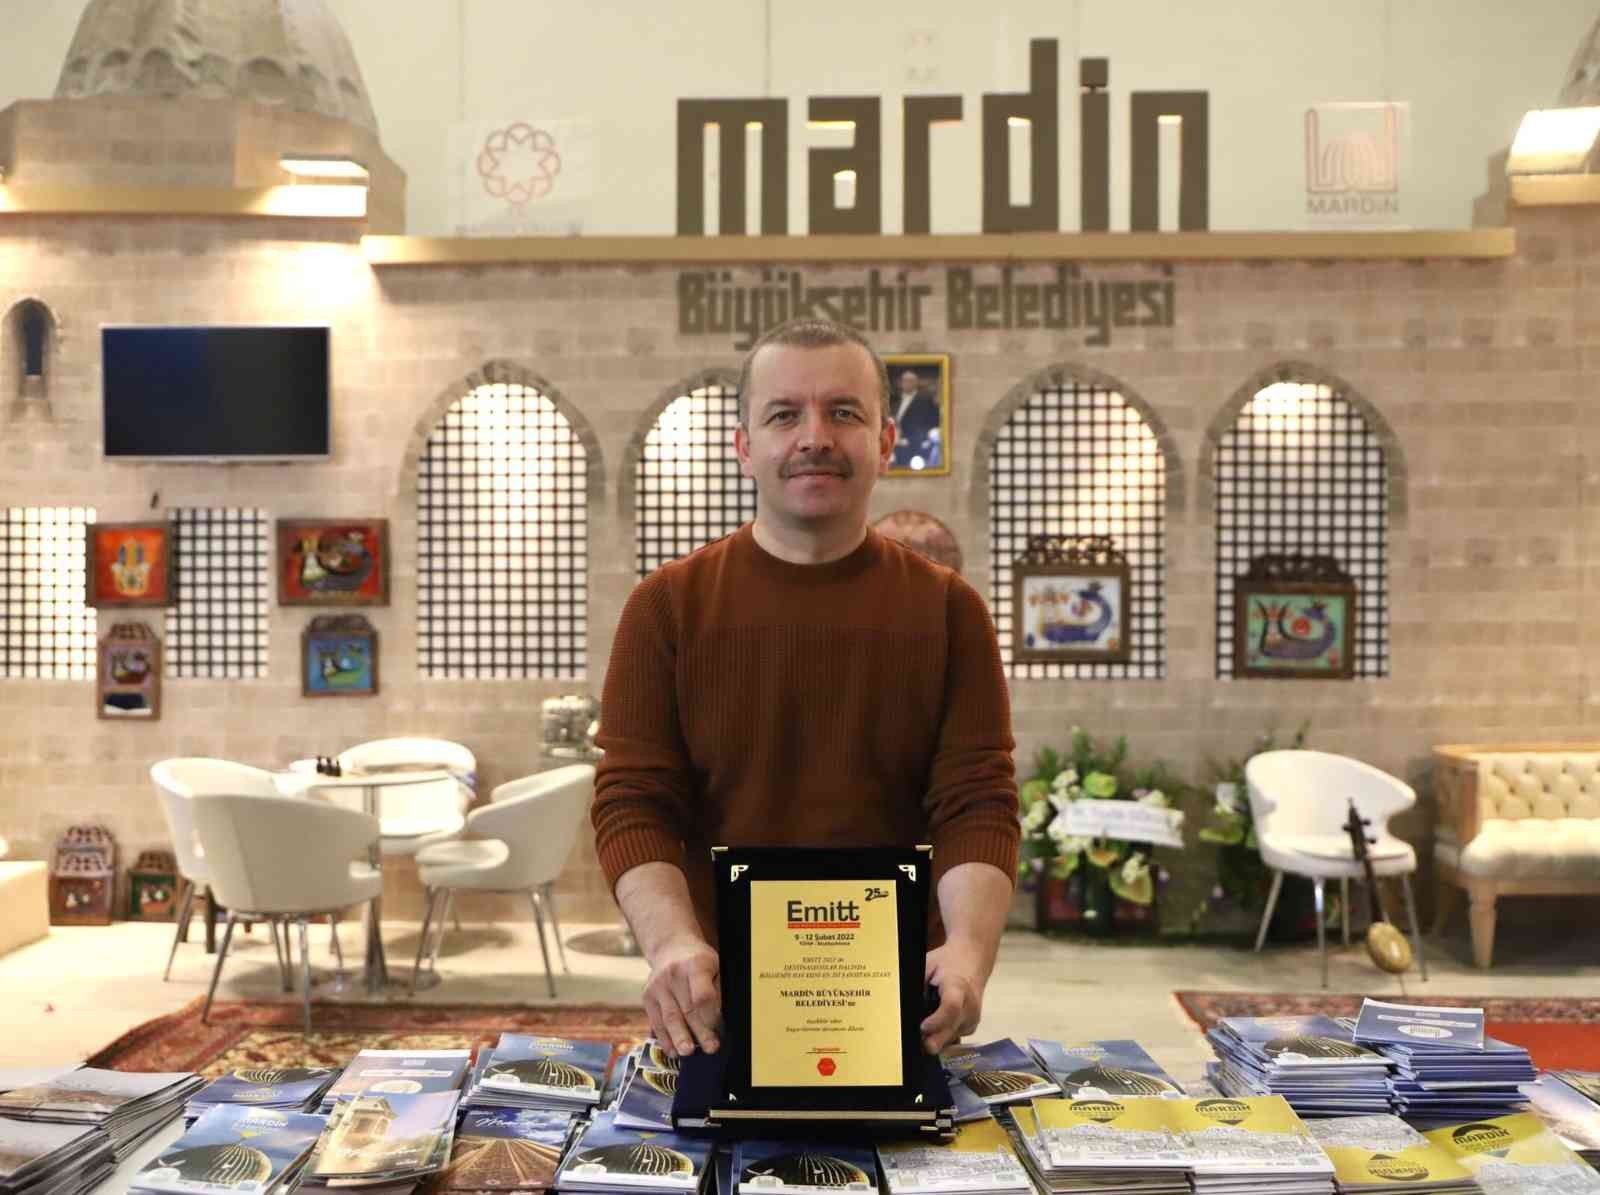 Mardin Büyükşehir Belediyesi EMITT 2022 Fuarı’nda ödül aldı #mardin